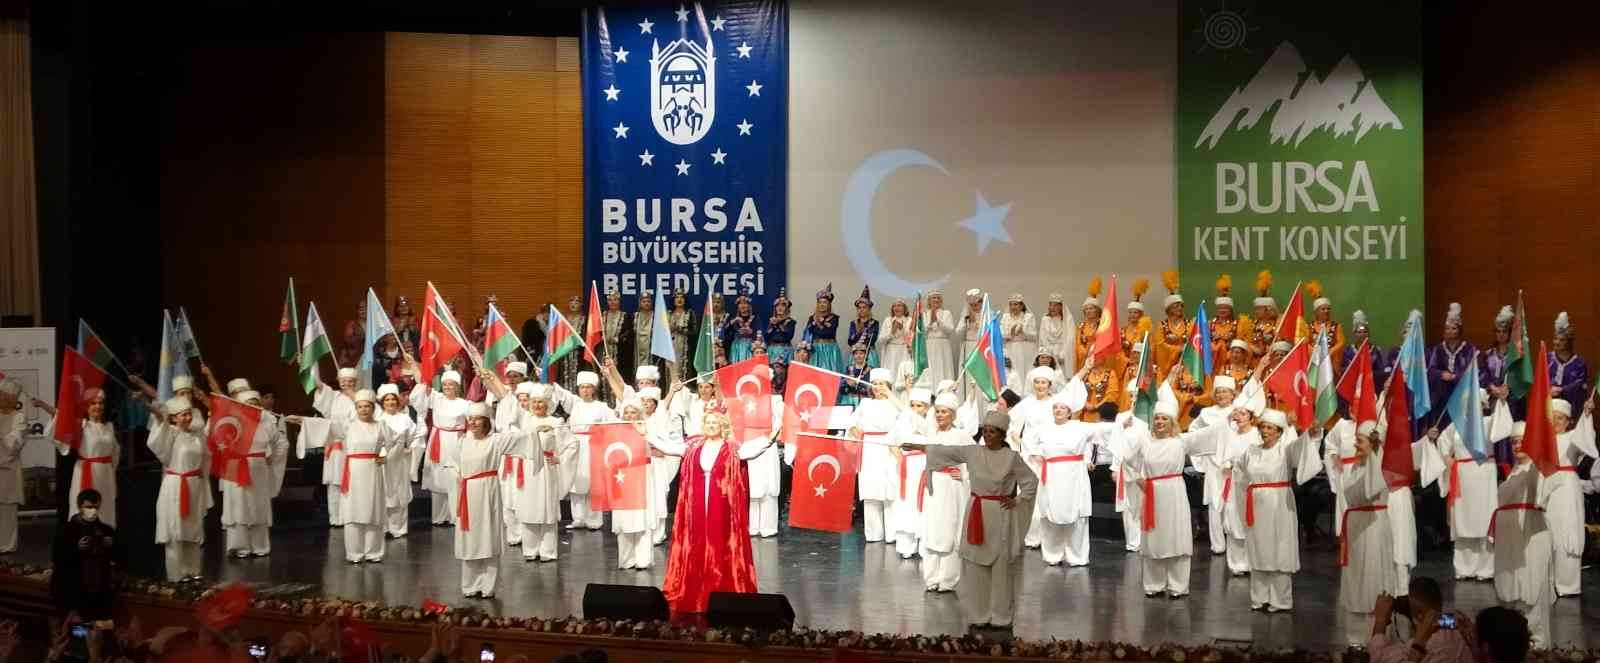 Türk kültürü başkenti Bursa’da söz kadınlarda